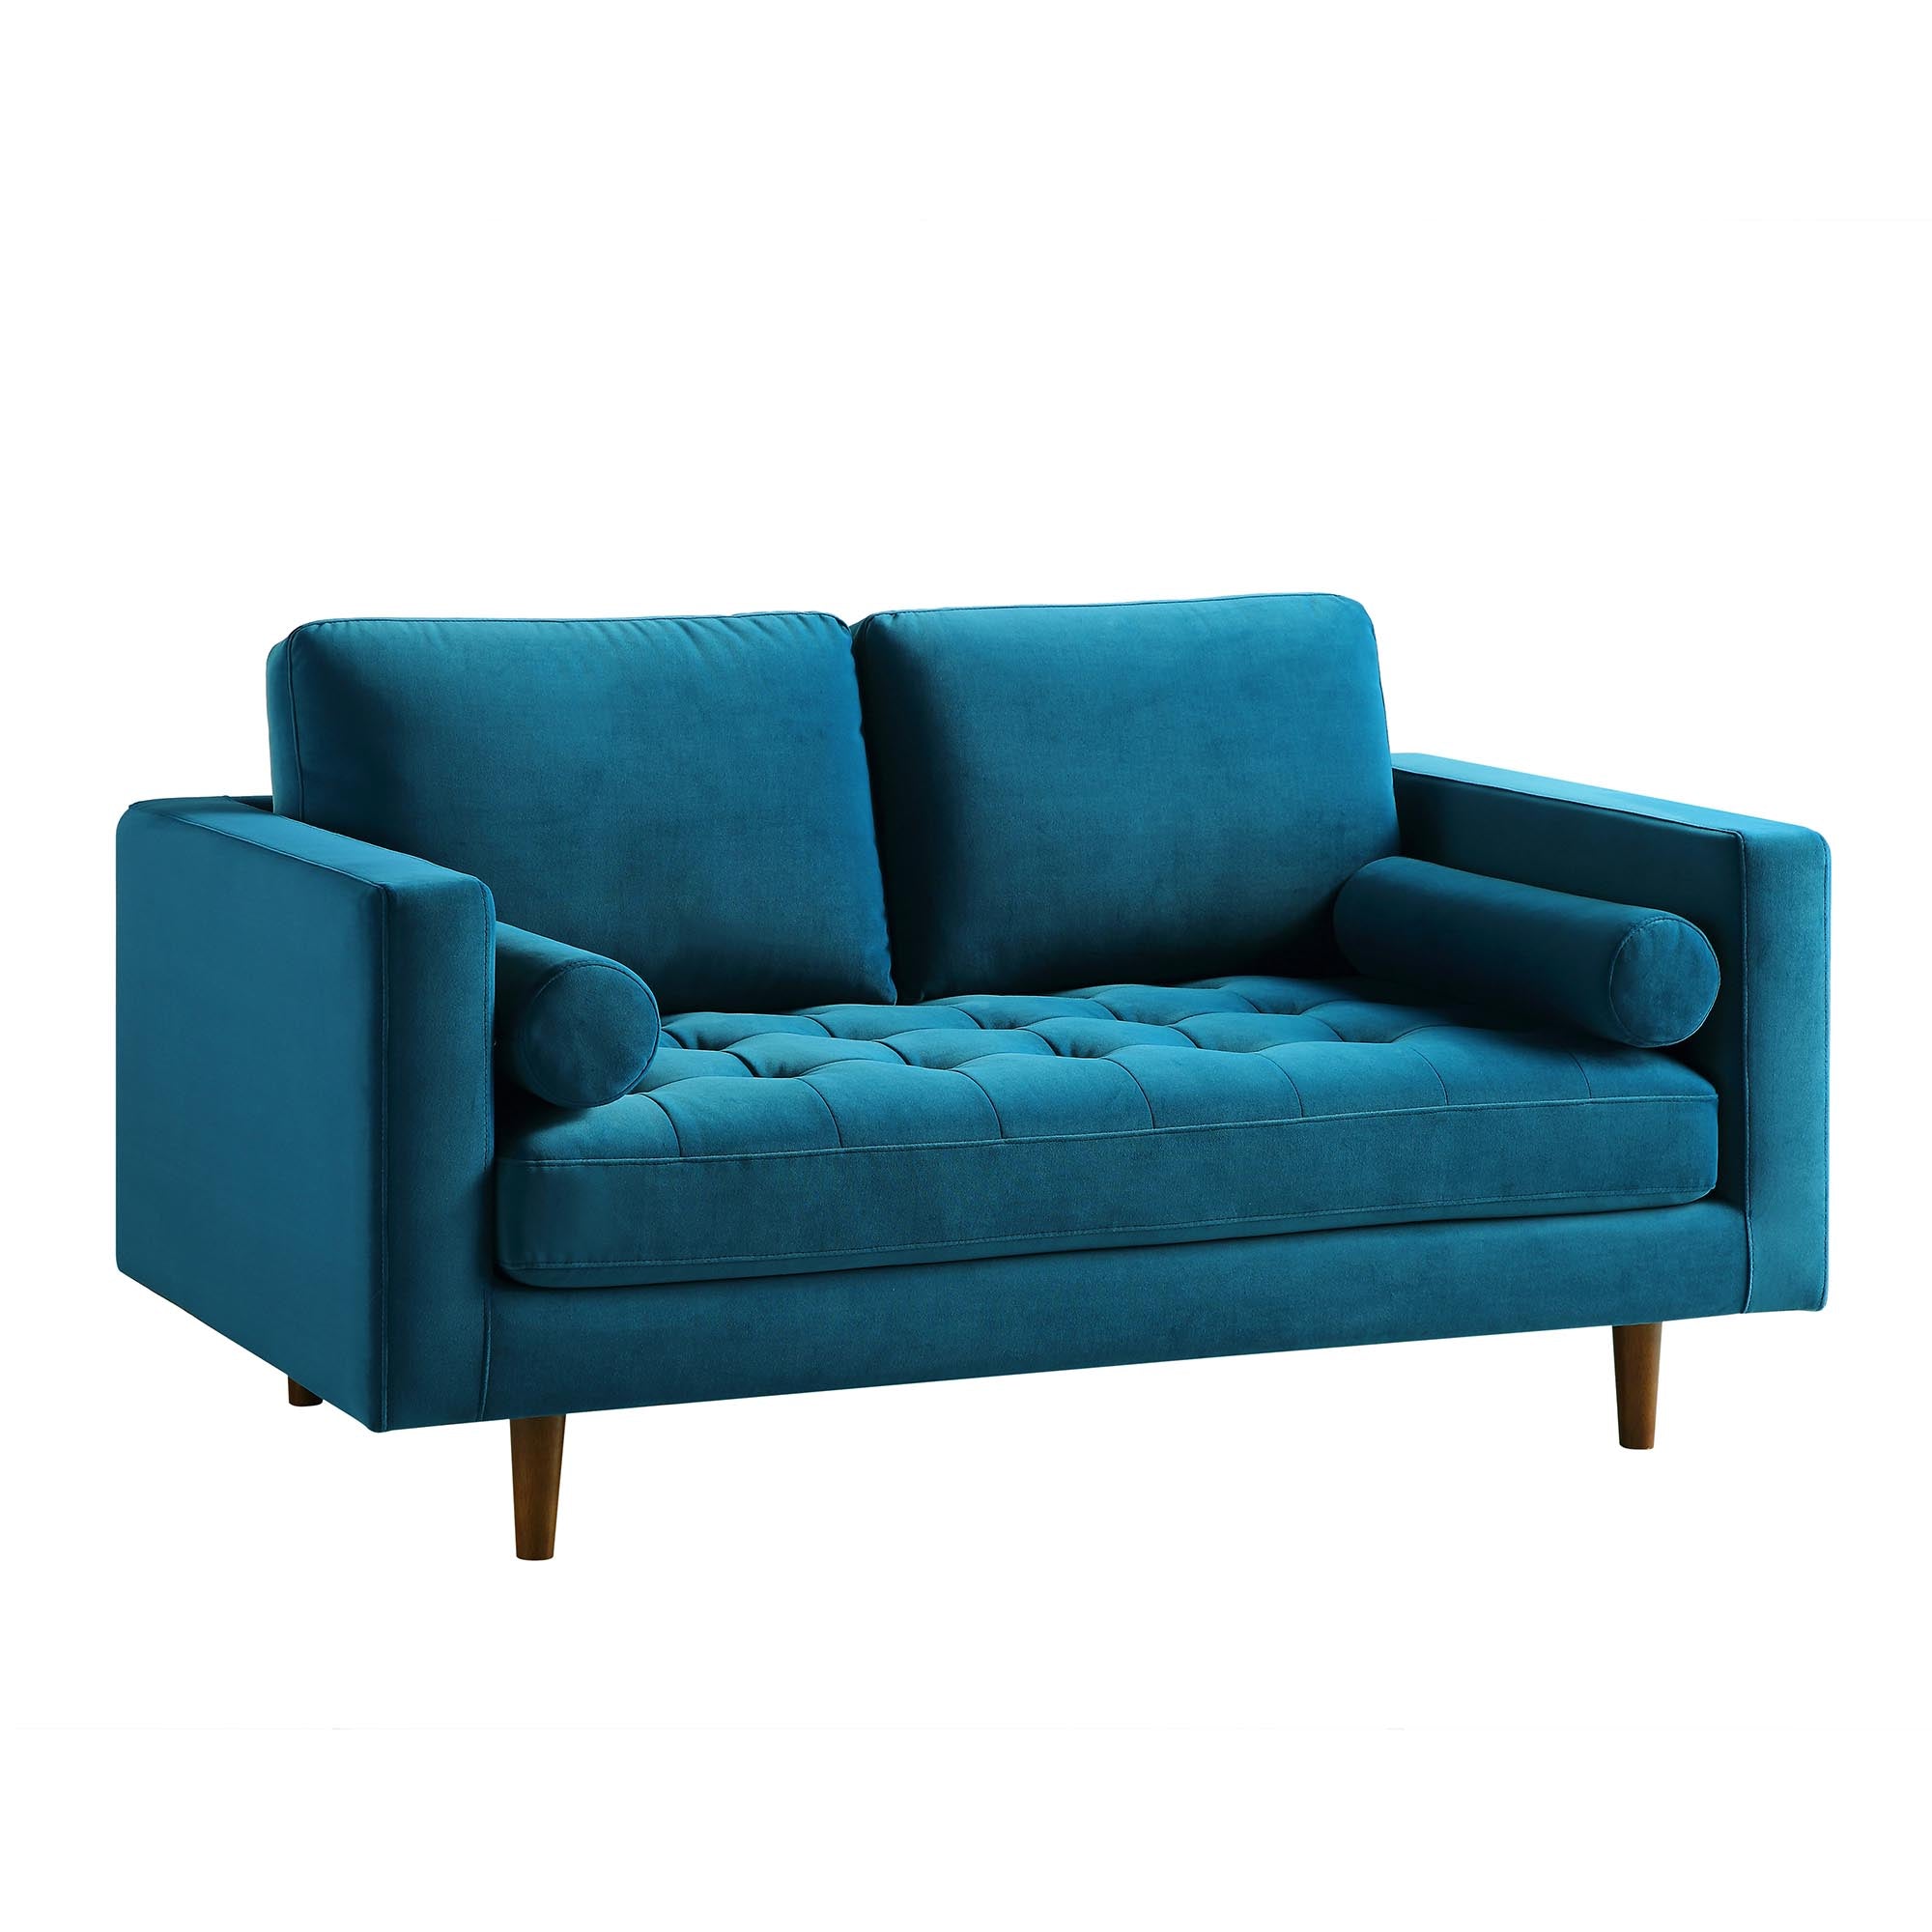 Henrietta 2-Seater Sofa, Teal Velvet